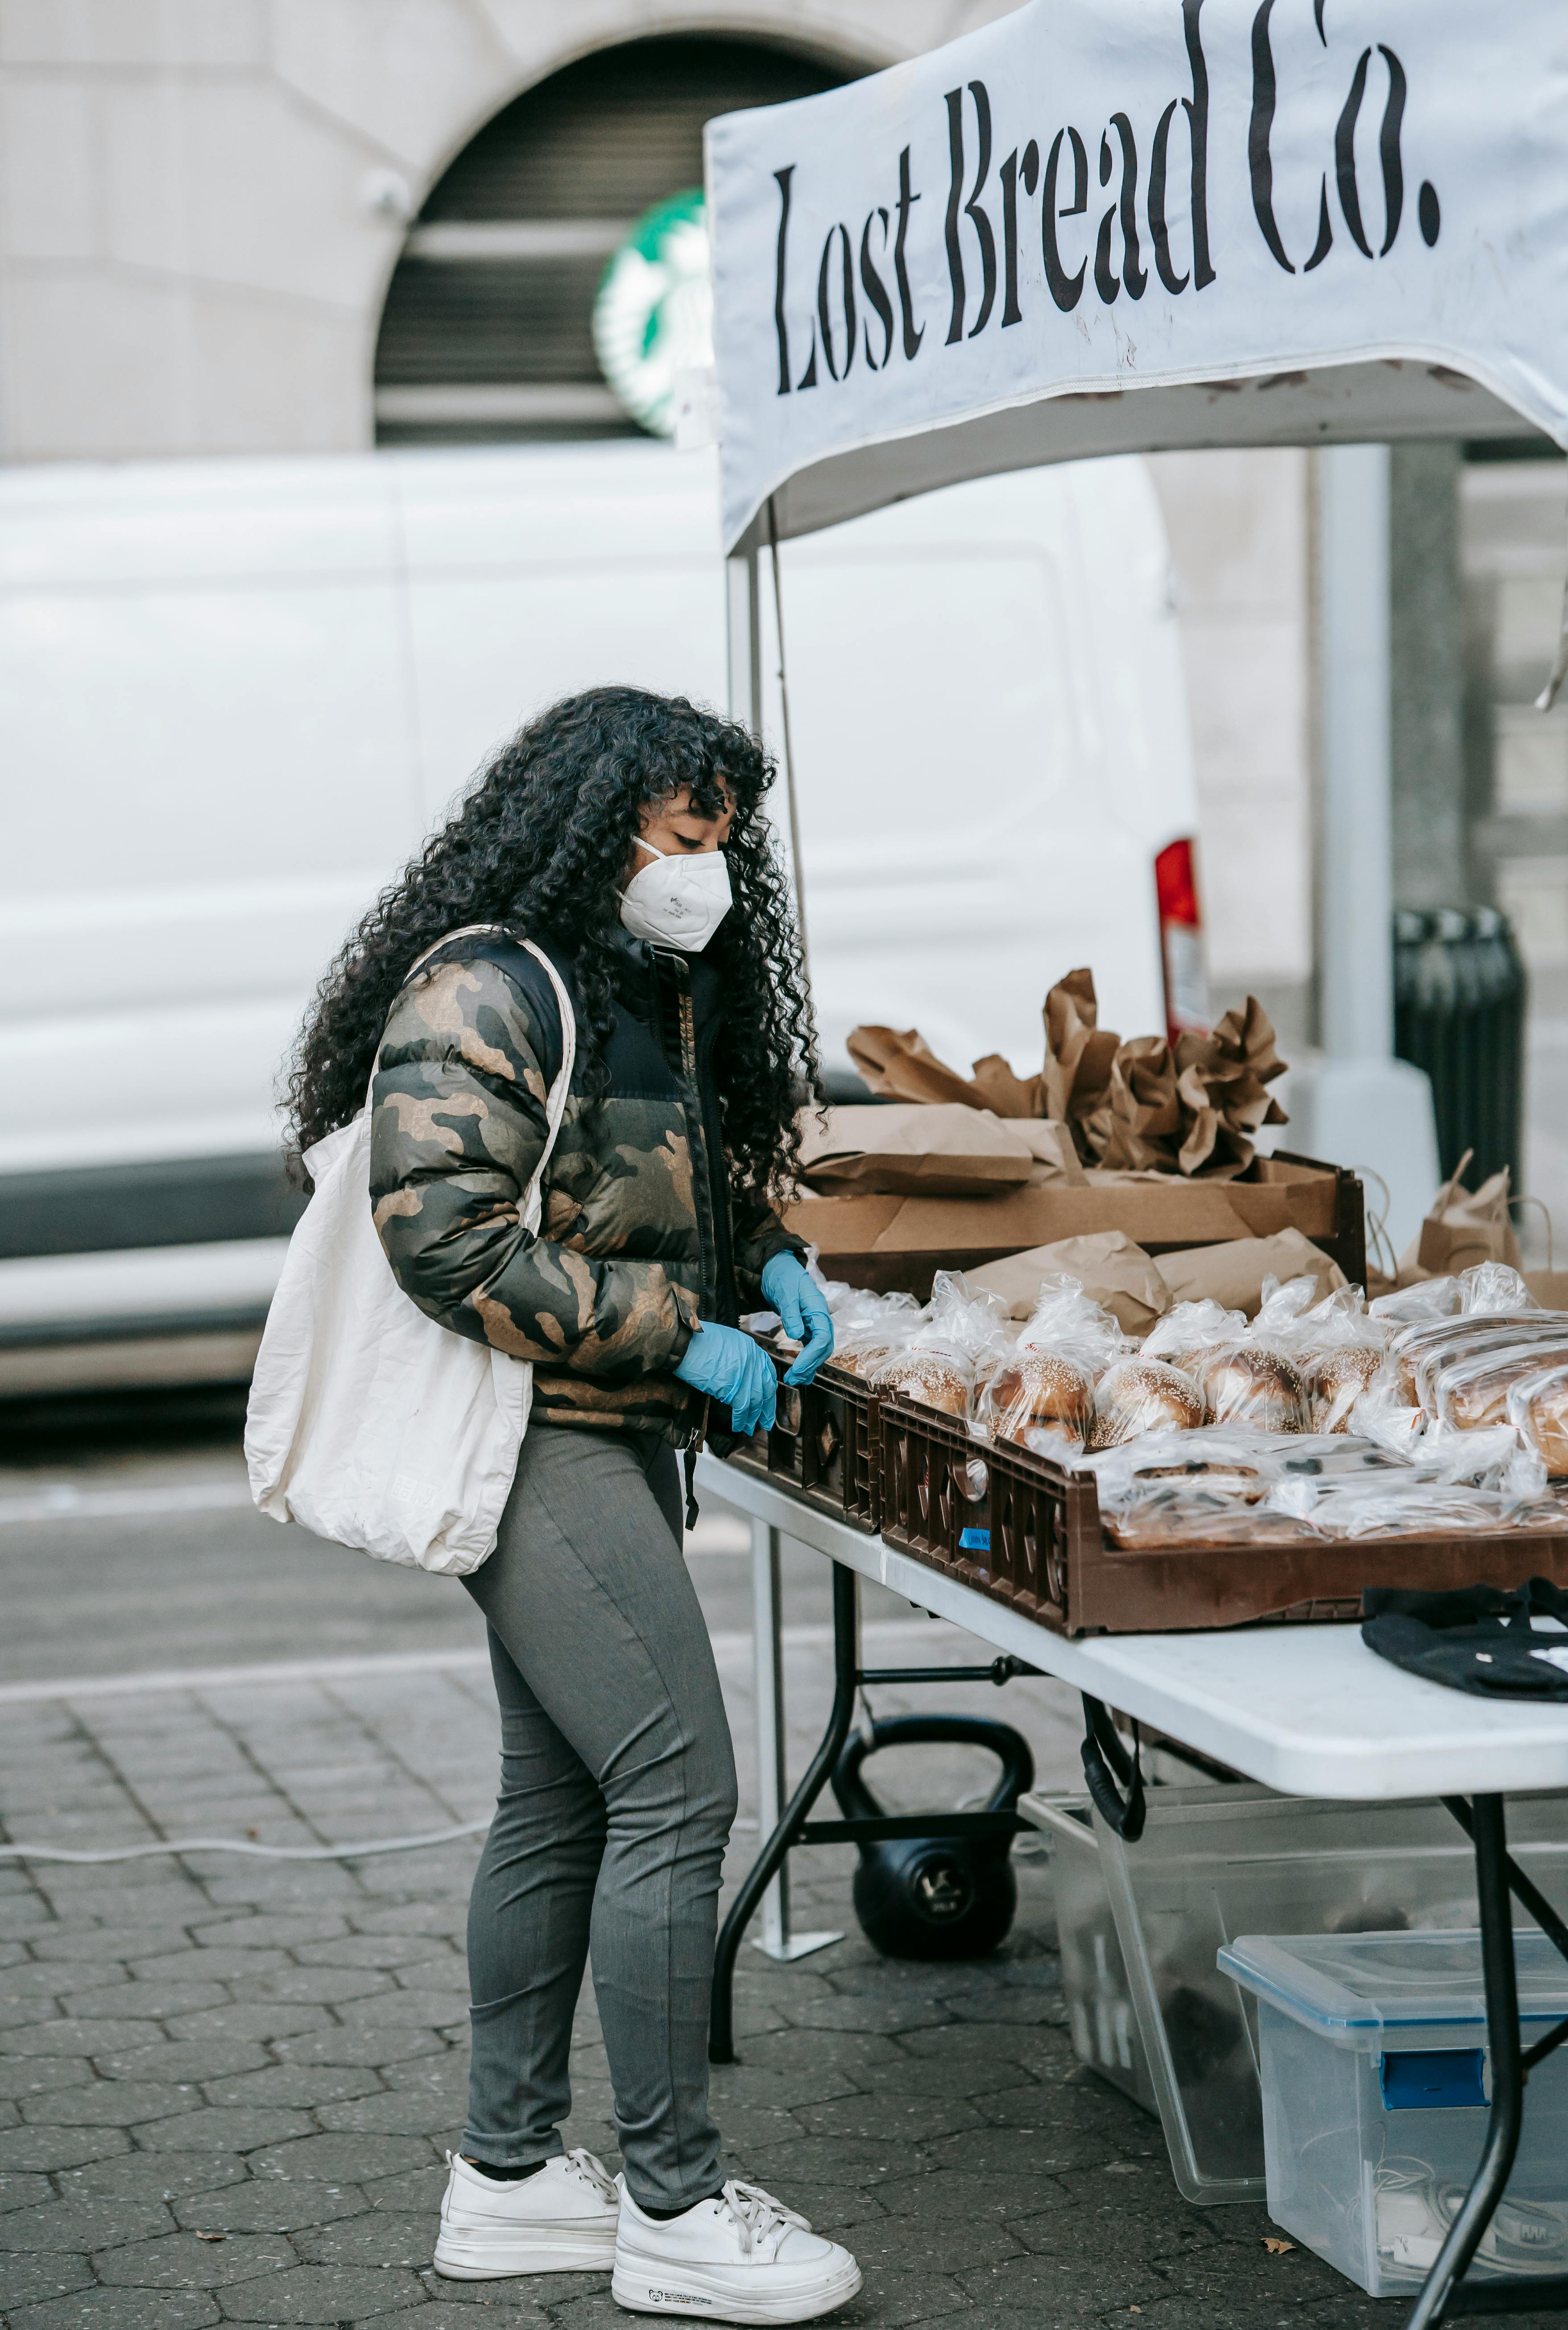 black woman choosing fresh bread in street market